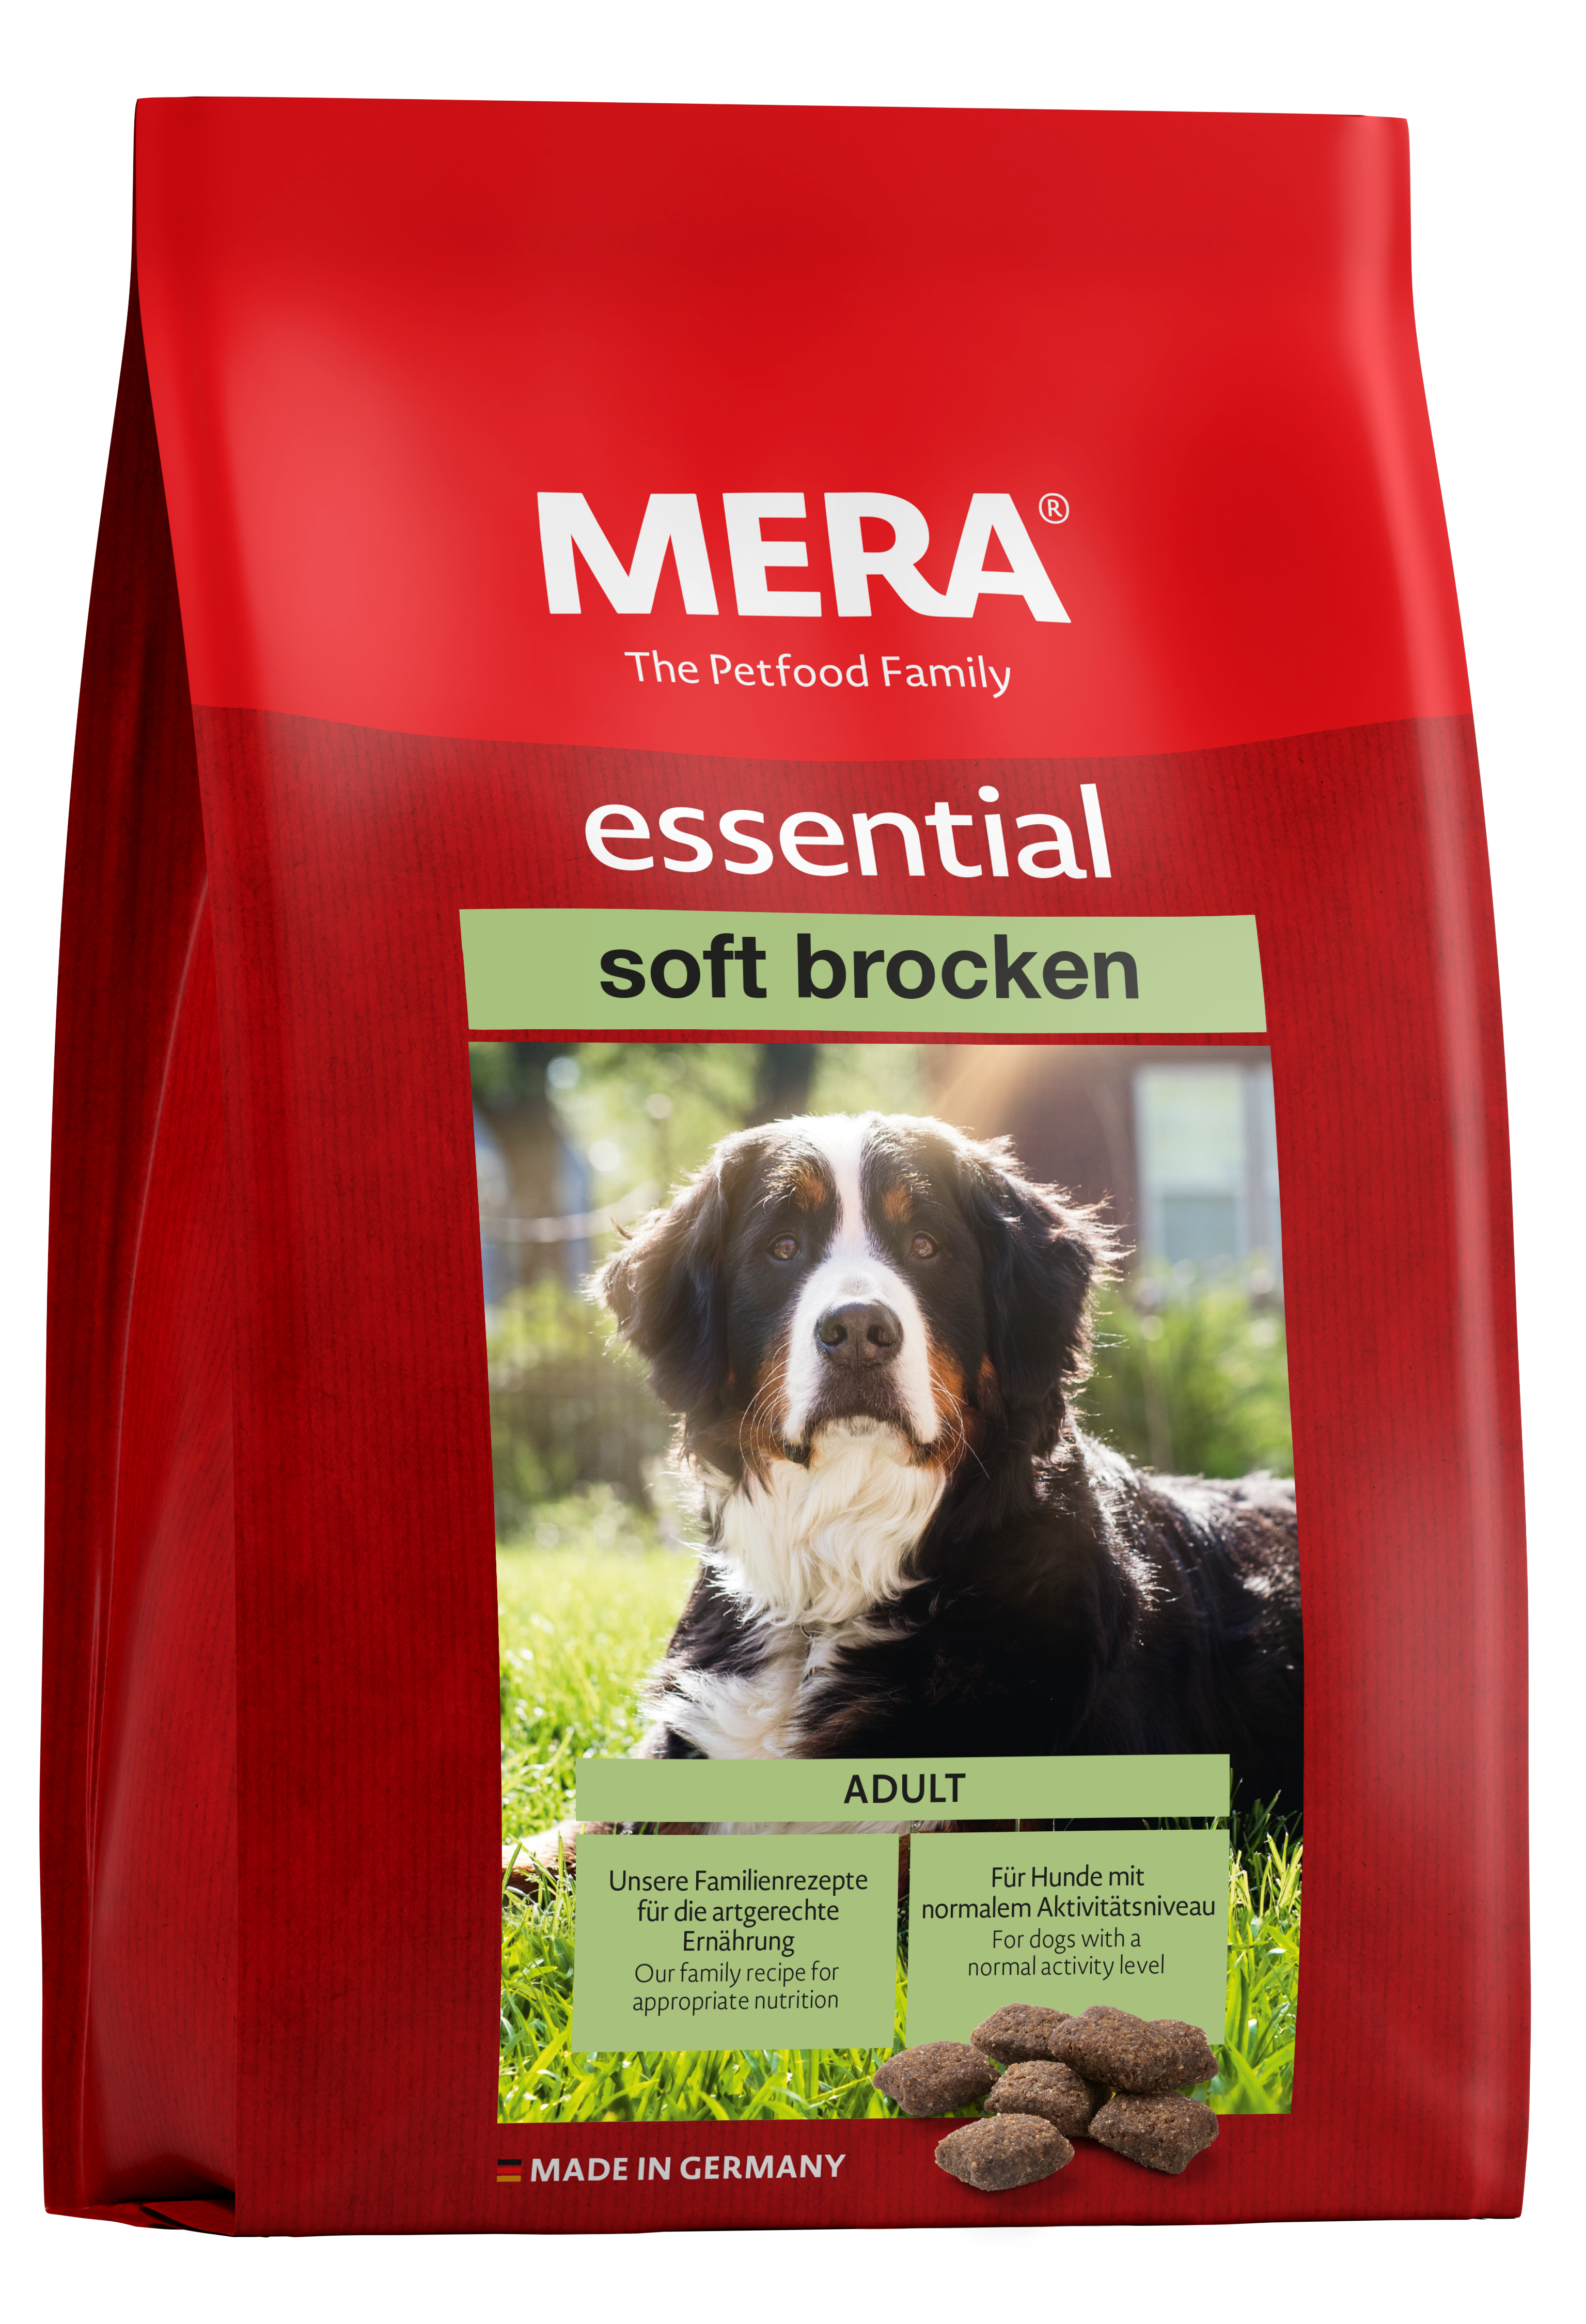 MERA essential soft brocken